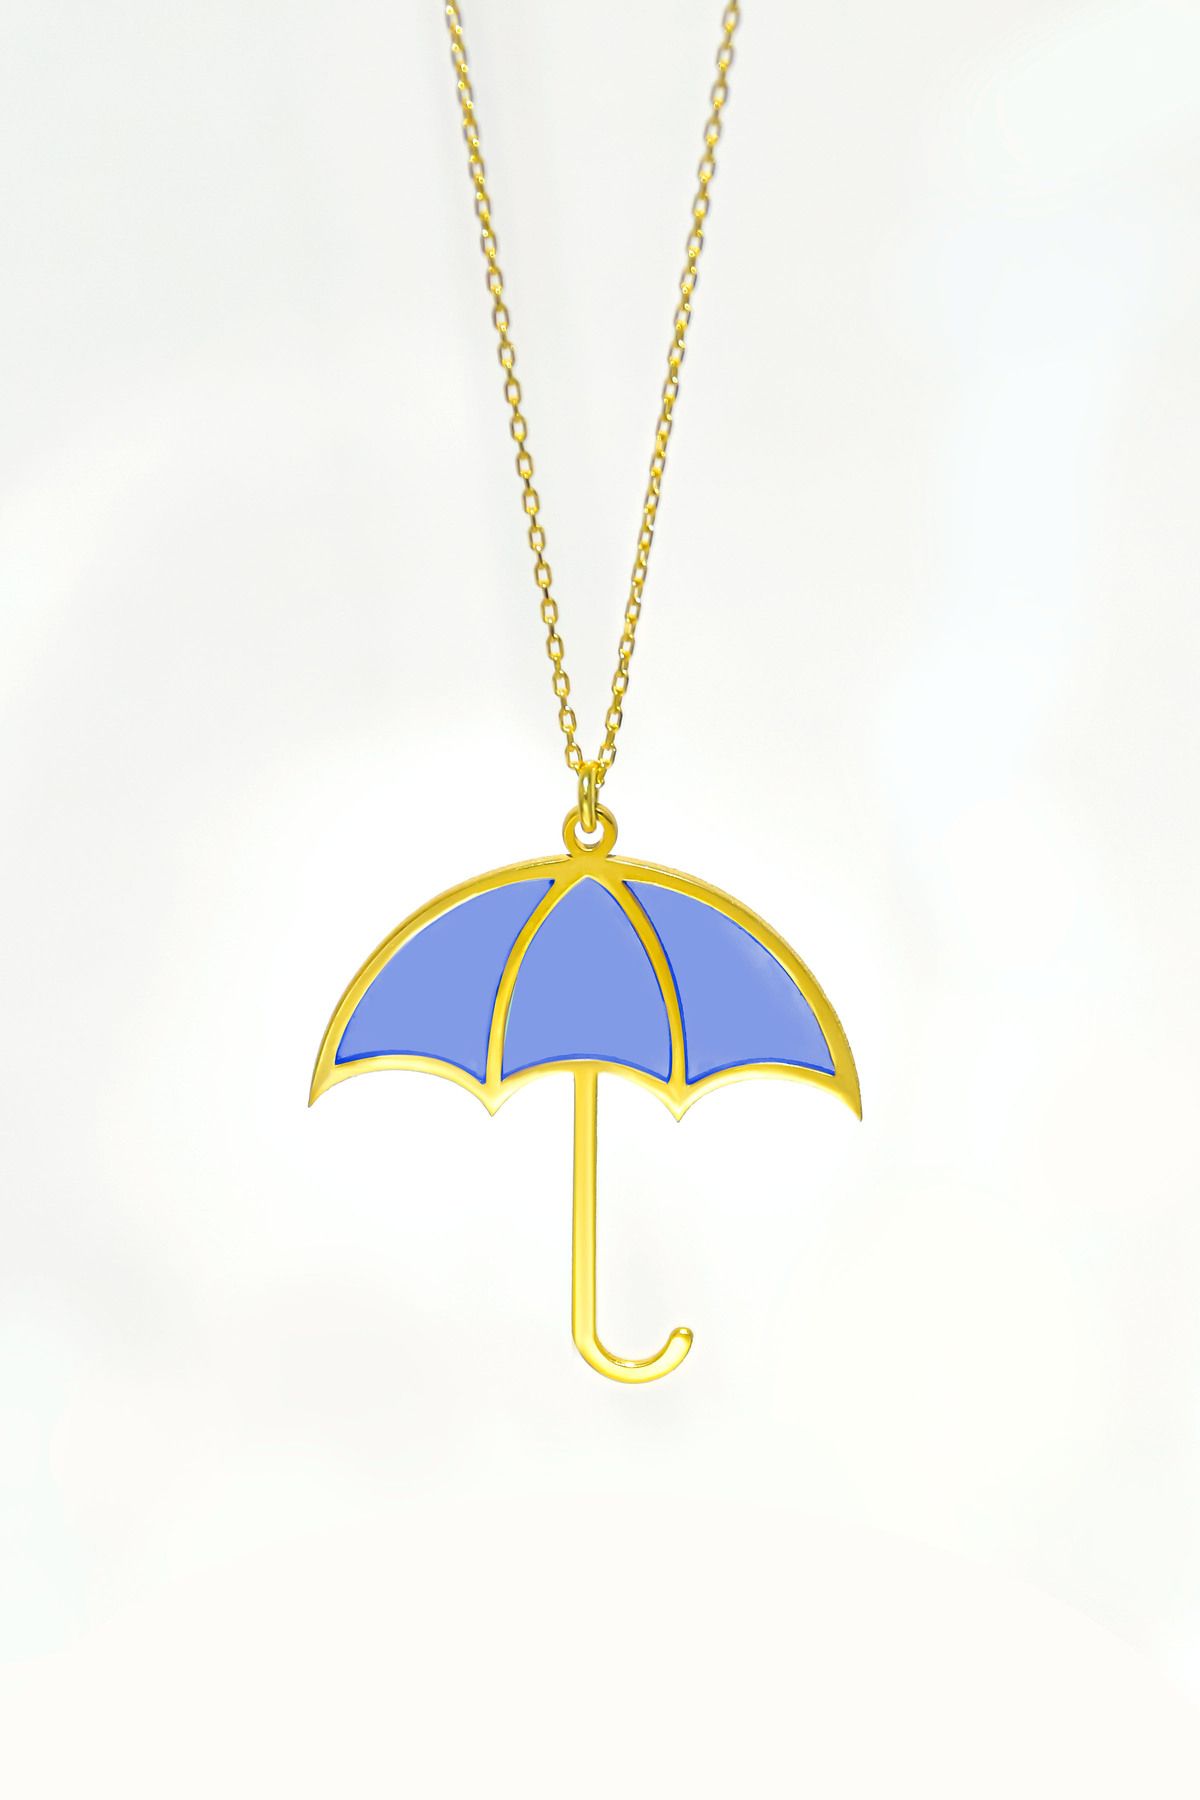 Papatya Silver 925 Ayar Gümüş Gold Kaplama Parlayan Rüya Serisi Tasarım Ebruli Mavi Cam Boyalı Şemsiye Kolye